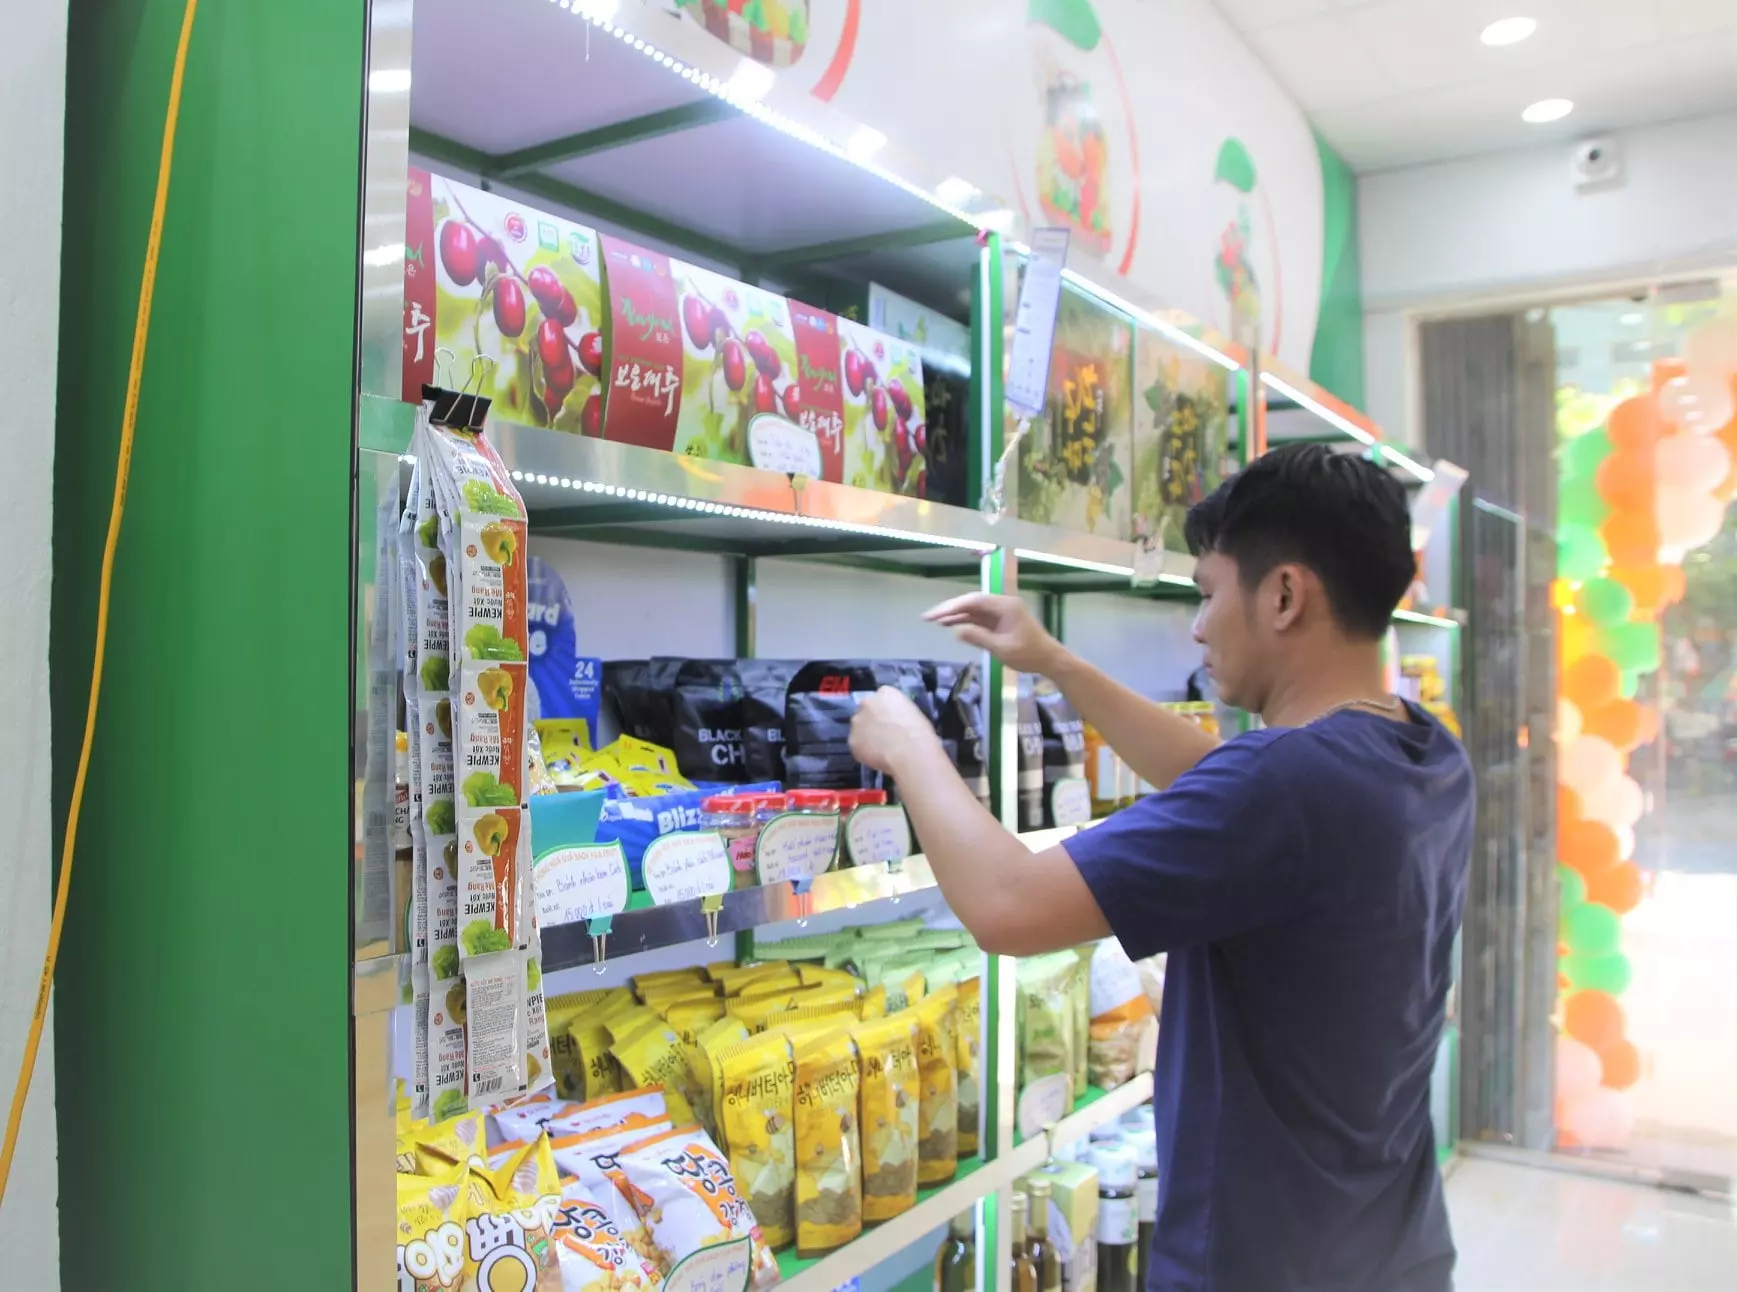 Shop hoa quả nhập khẩu tốt nhất tại Hà Nội | Hoa Quả Fuji | Hệ thống hoa quả sạch nhập khẩu Fuji